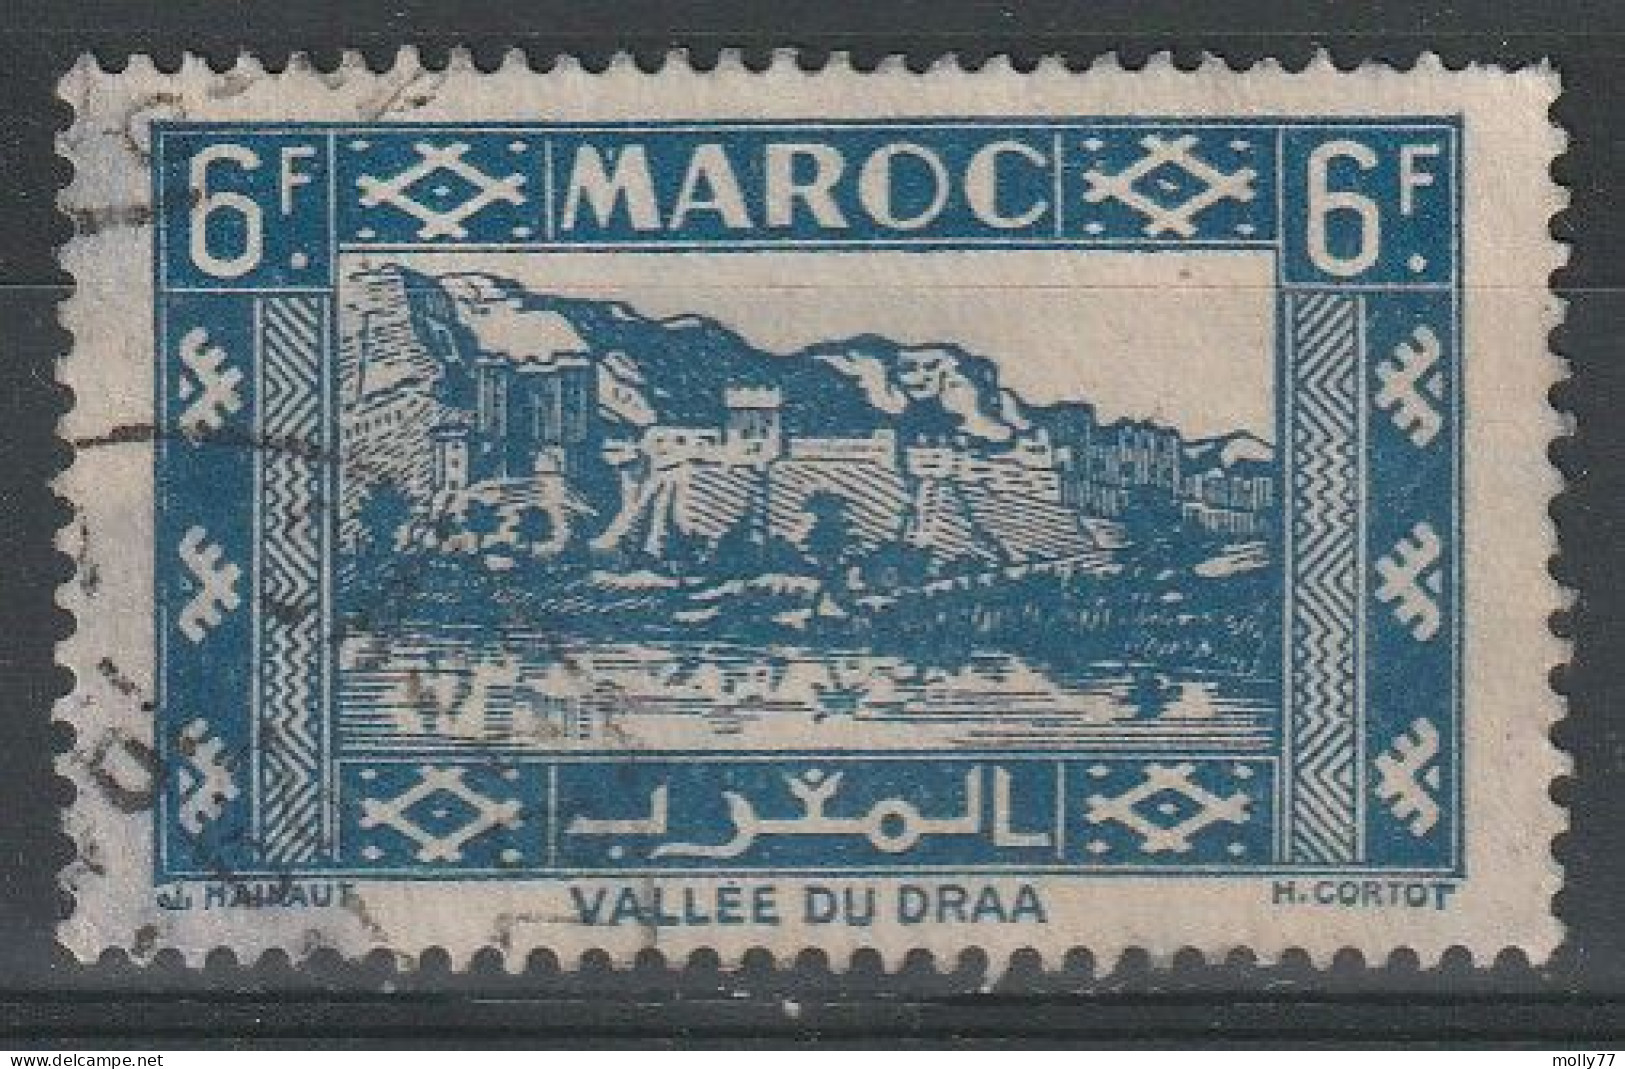 Maroc N°233 - Oblitérés